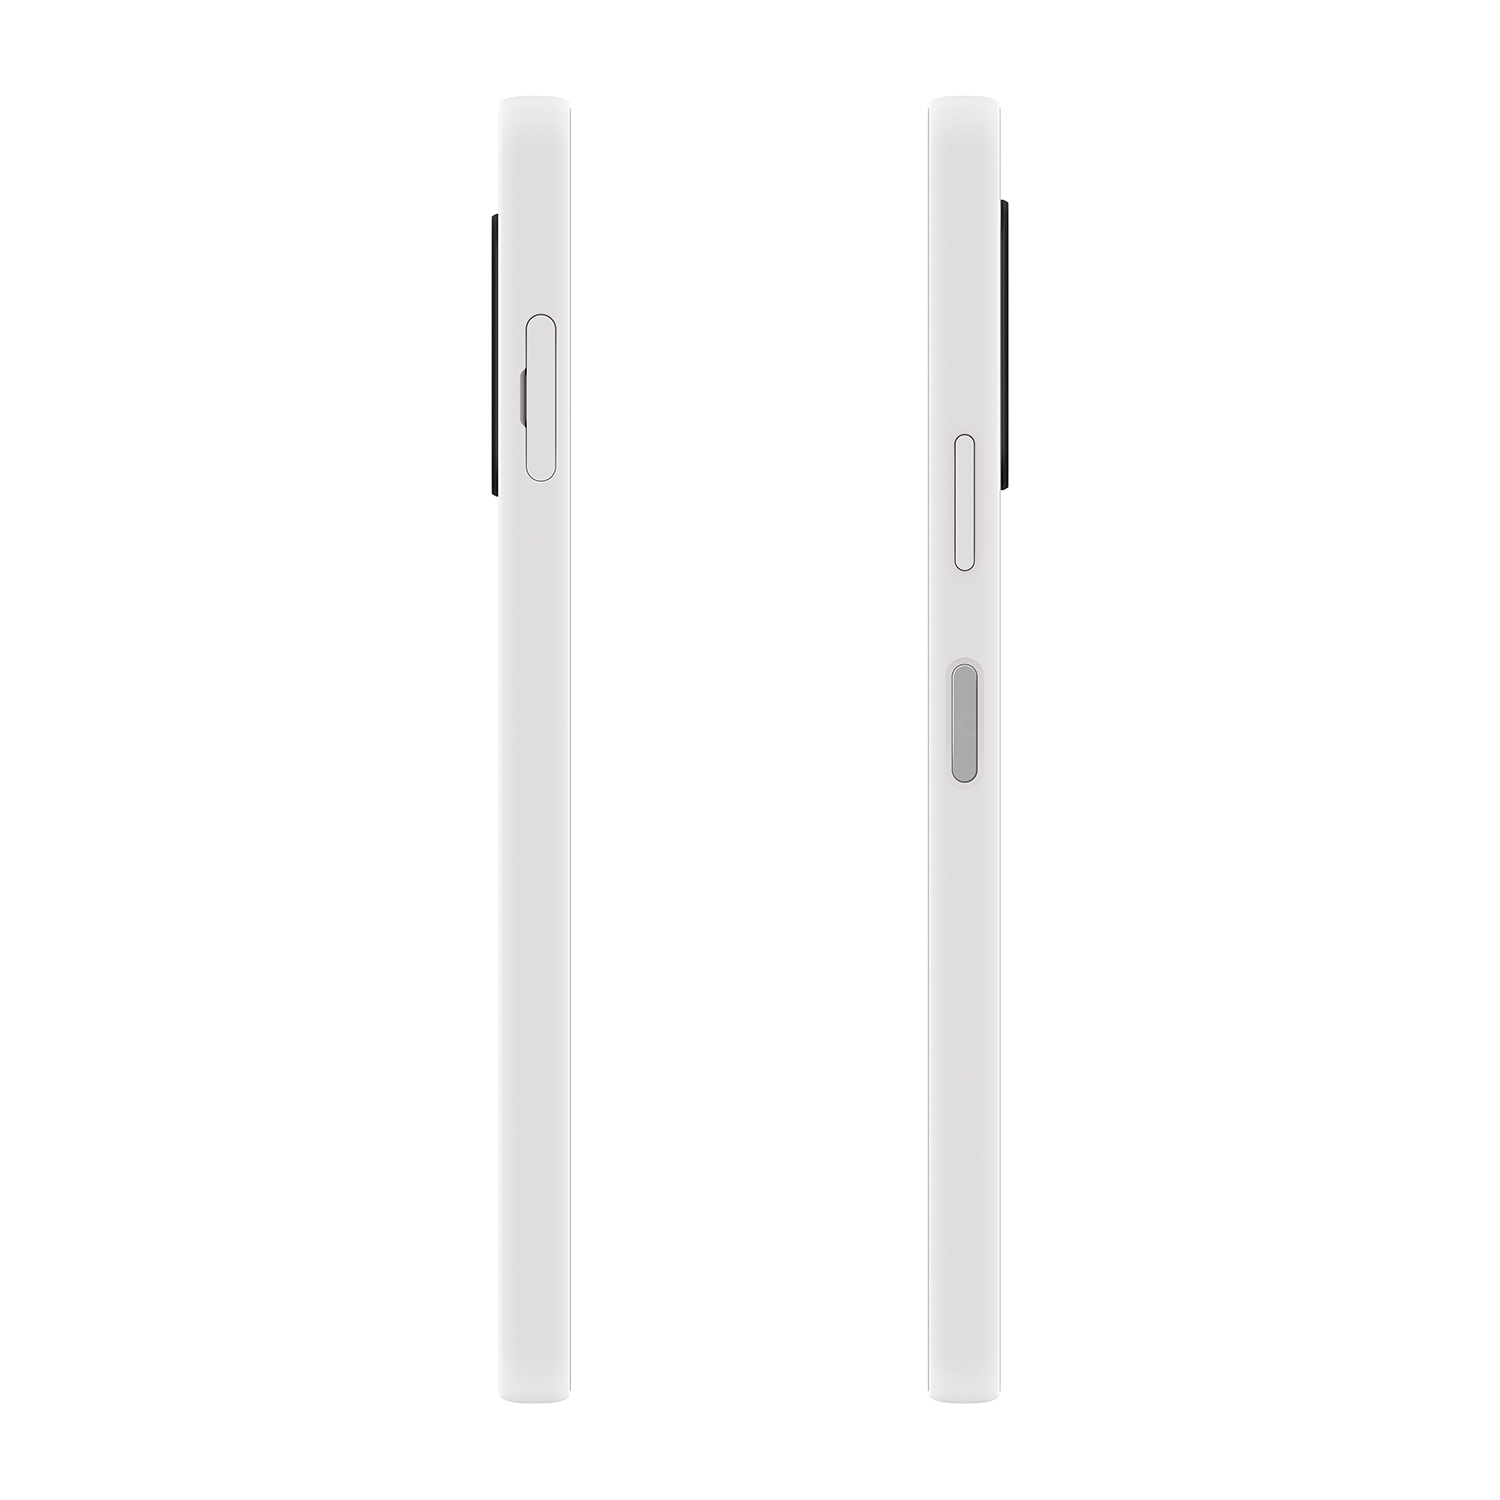 Xperia 10 V (5G) 128 GB, blanco, desbloqueado - Sony